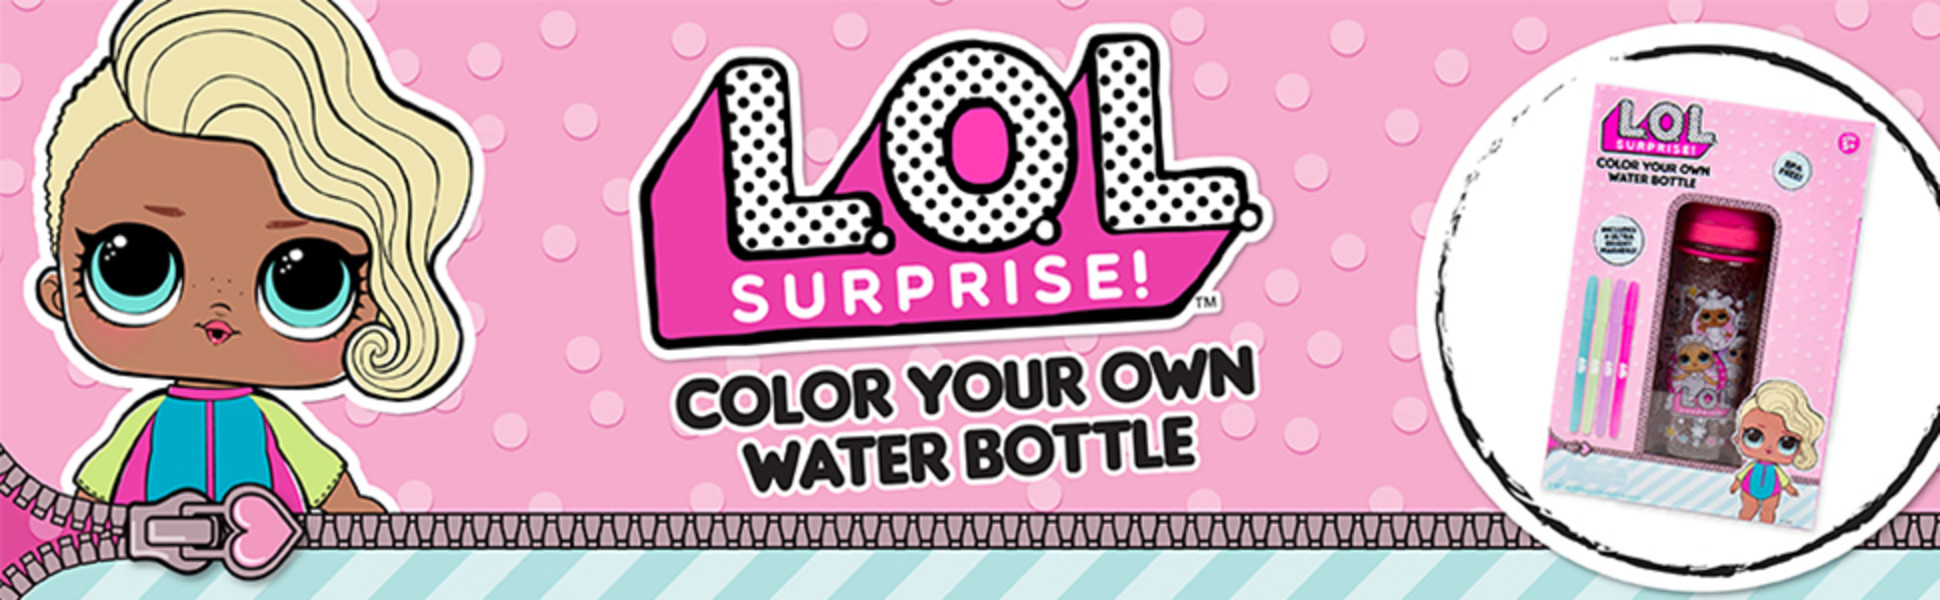 L.O.L. Surprise! Color Your Own Water Bottle - DIY Bottle Coloring